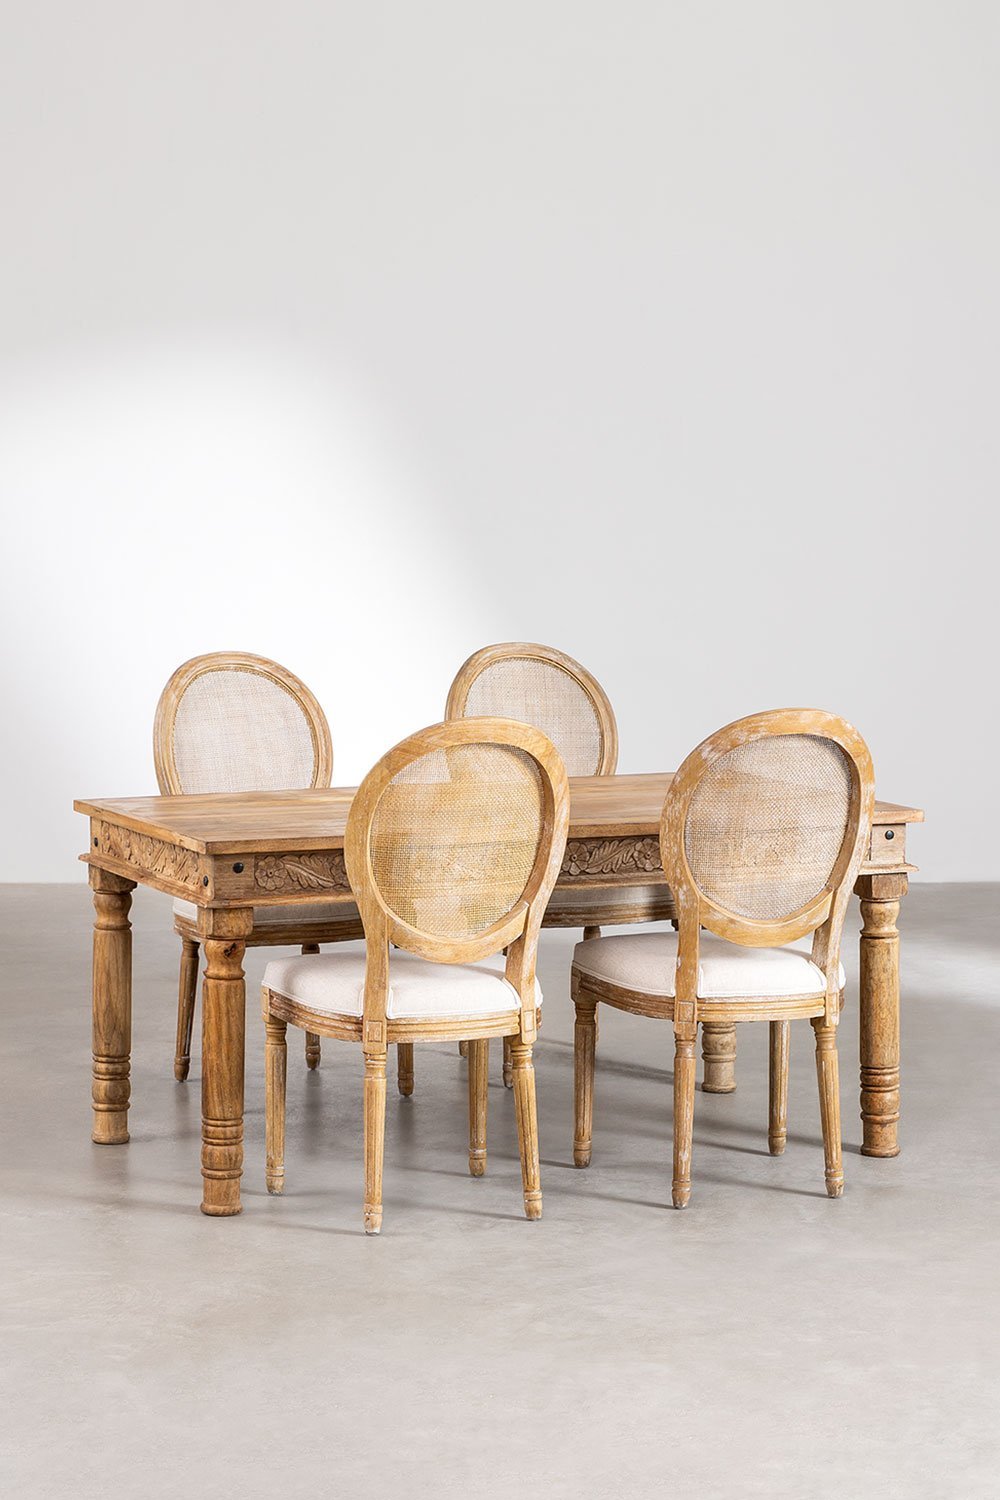 Rechthoekige mangohouten tafelset Taraz (160x90 cm) en 4 stoffen eetkamerstoelen Sunna, galerij beeld 2